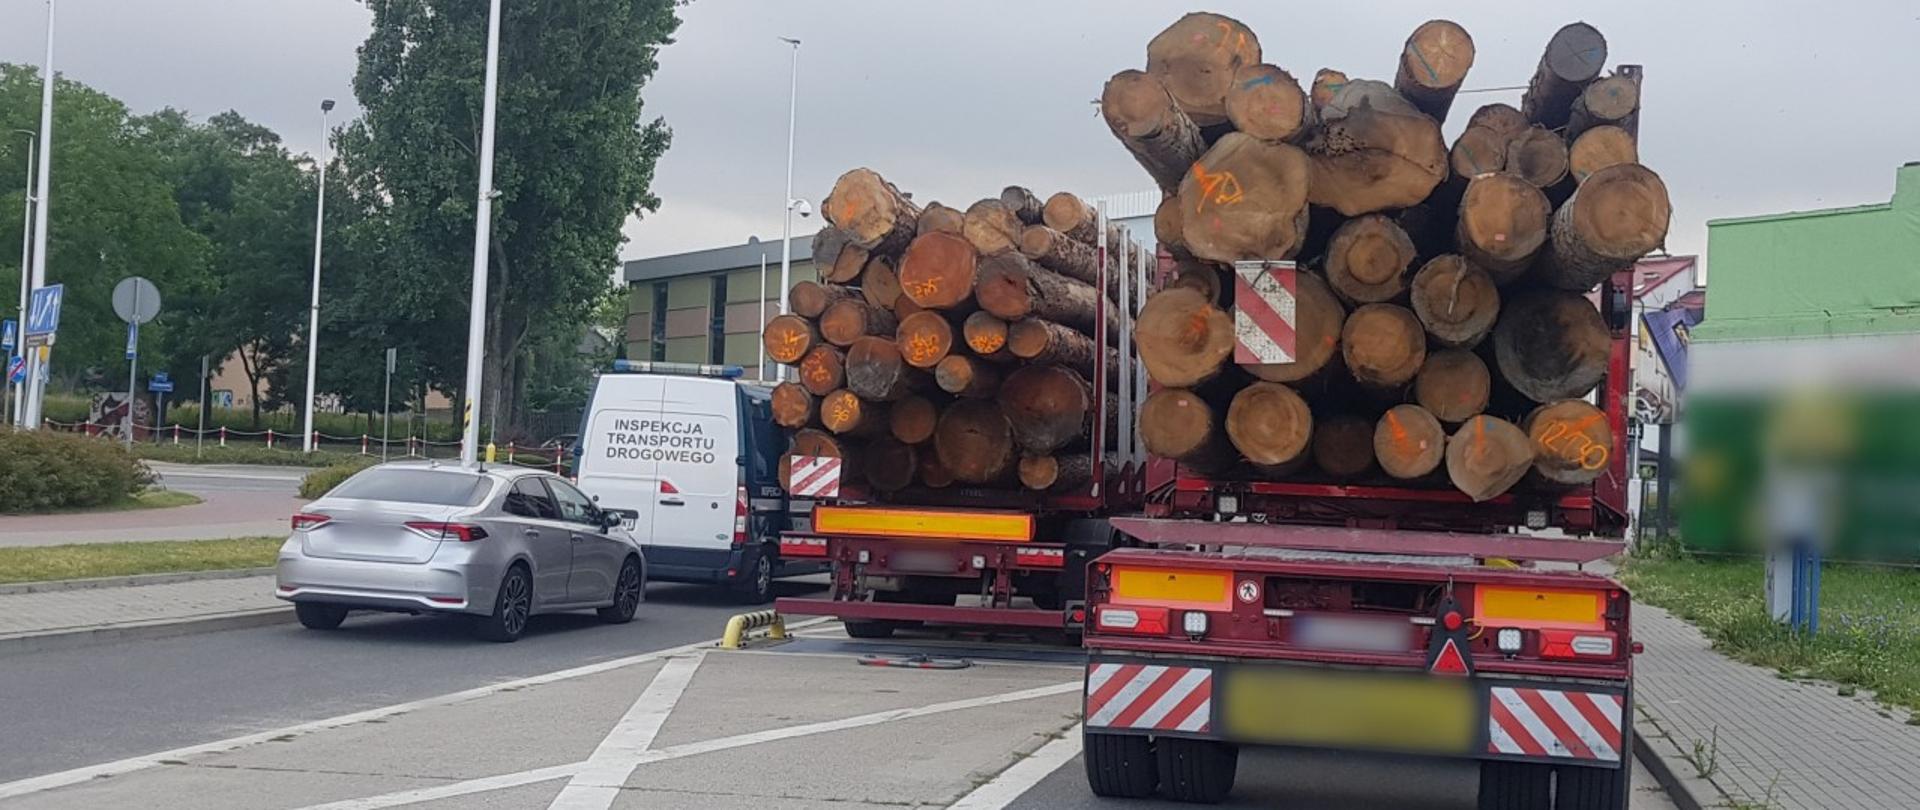 Ciężarówki przewożące za dużo kłód drewna, zatrzymane do kontroli przez inspektorów Inspekcji Transportu Drogowego z Piotrkowa Trybunalskiego.